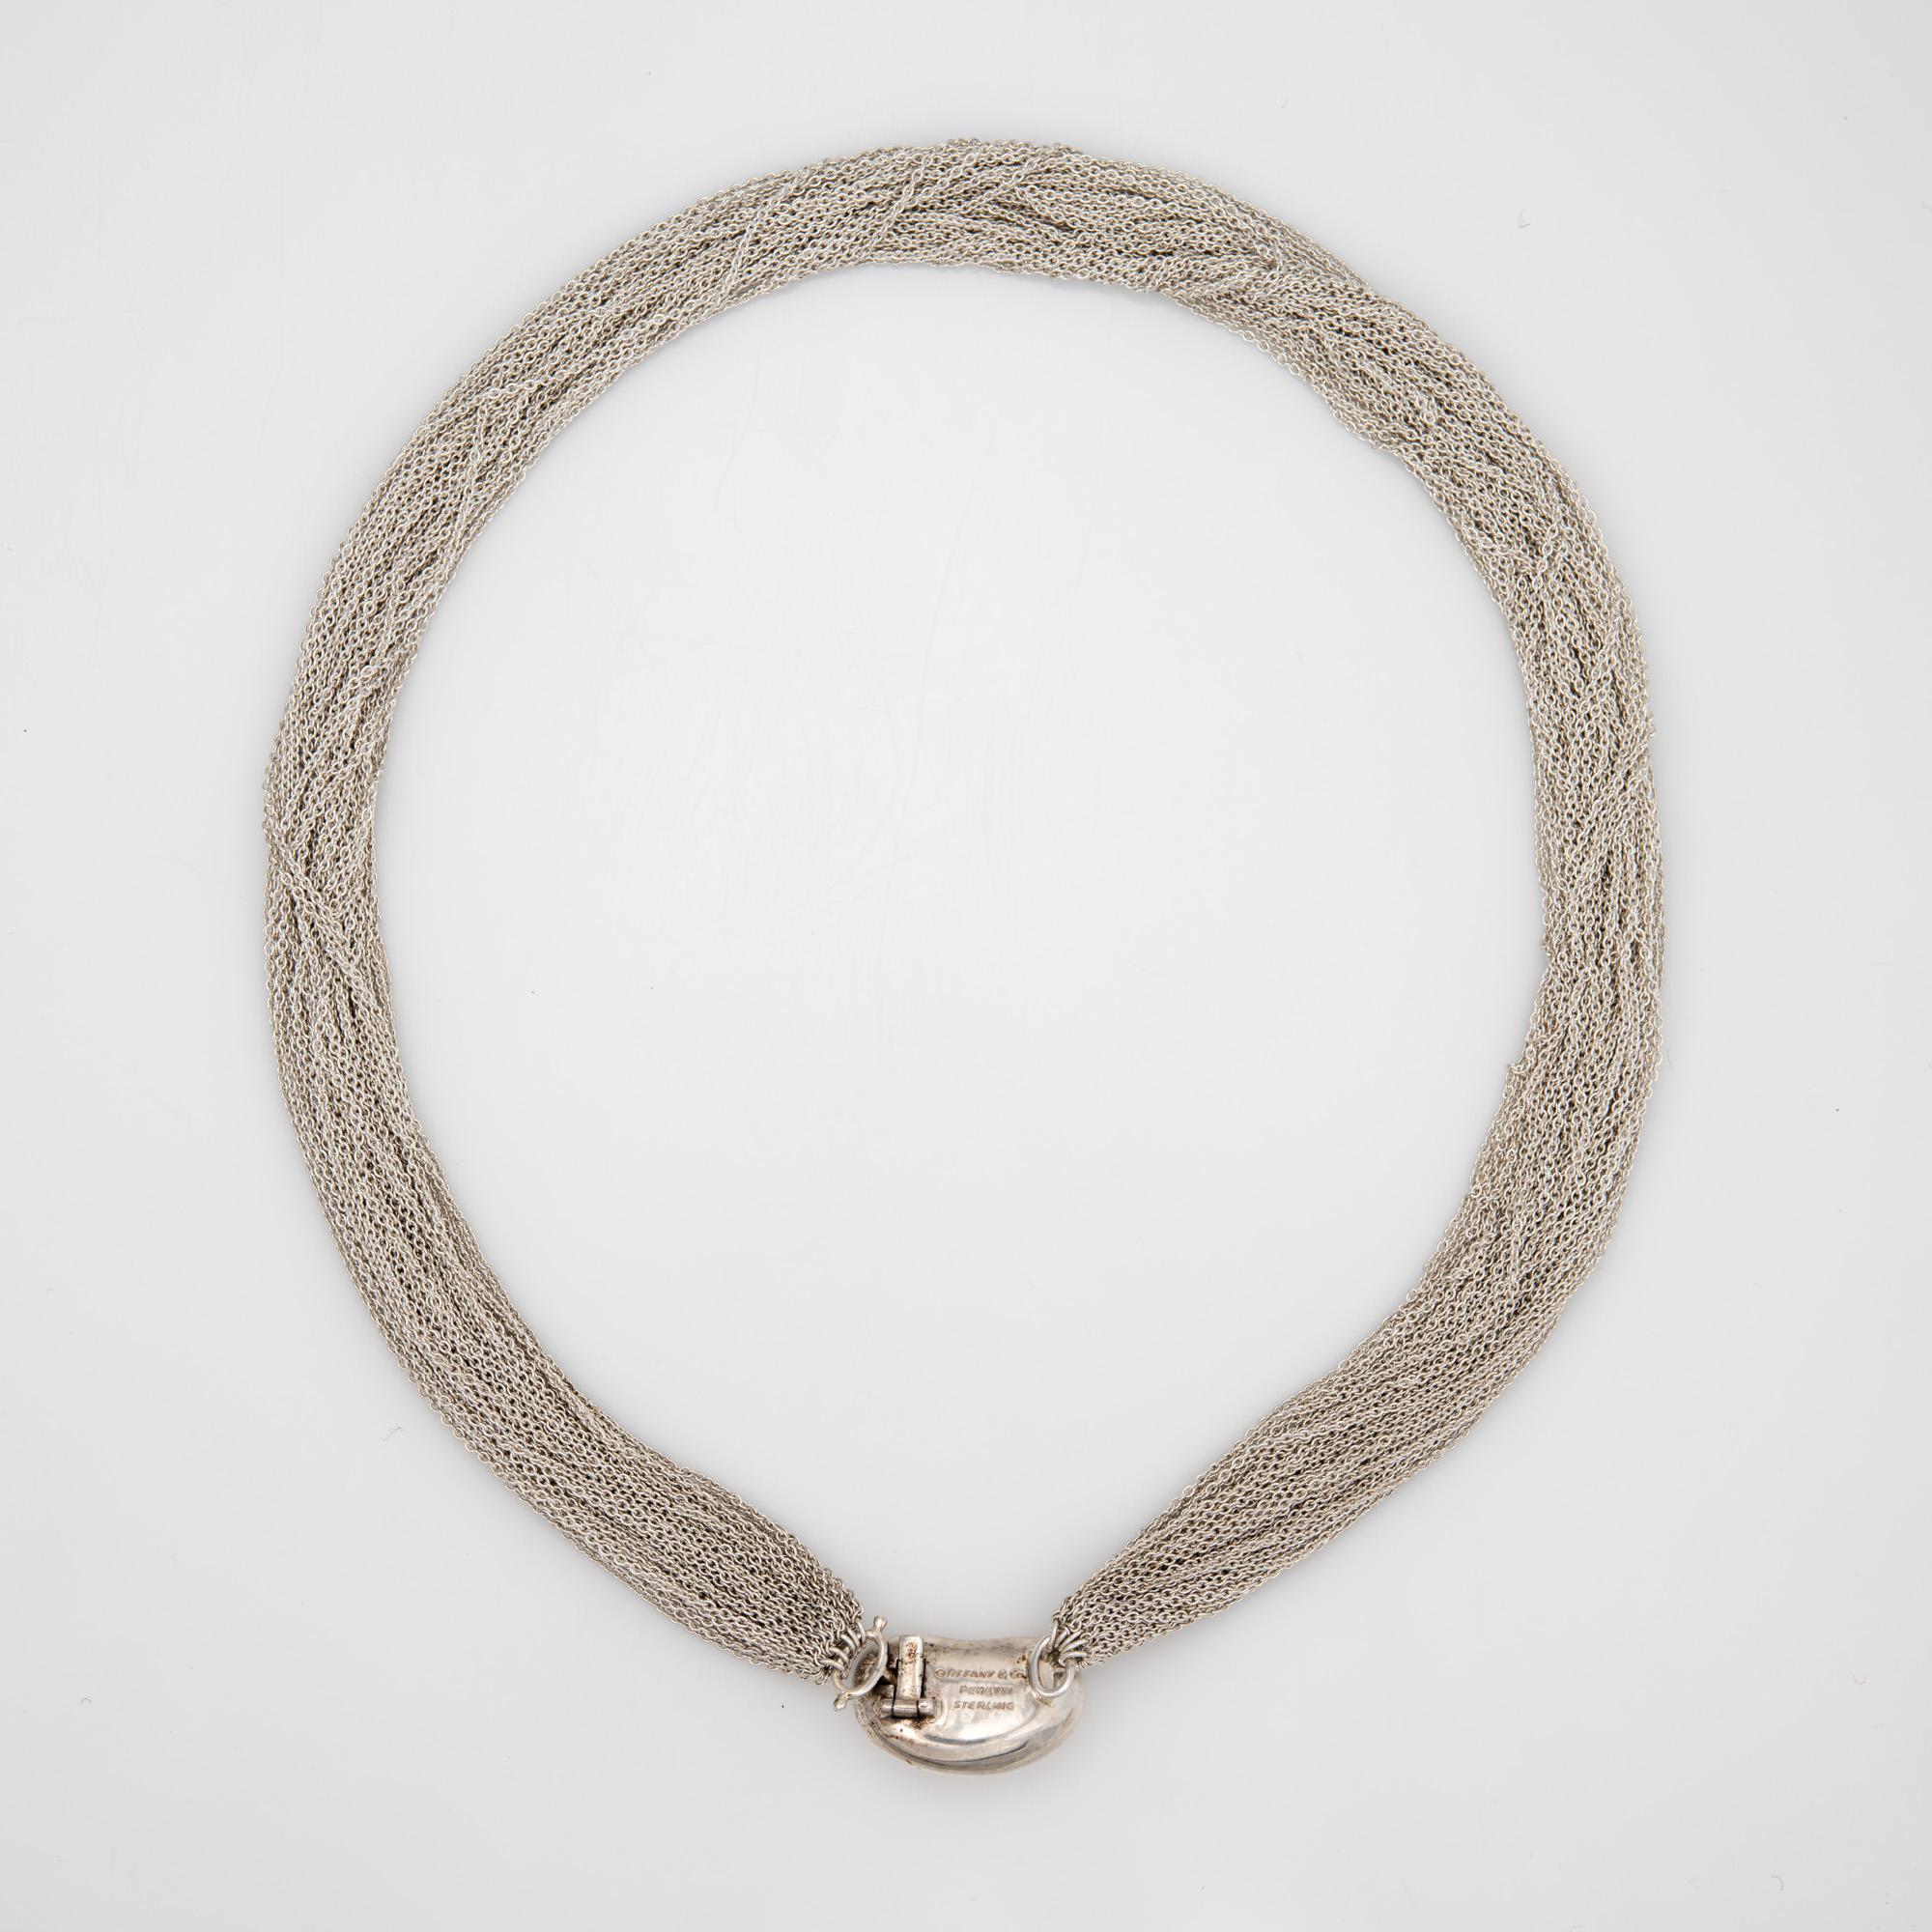 Élégant collier de haricots multibrins vintage de Tiffany & CIRCA, réalisé en argent sterling (vers les années 1970-1980).  

Le fermoir en forme de haricot est une création classique d'Elsa Peretti et constitue un excellent exemple de ses premières